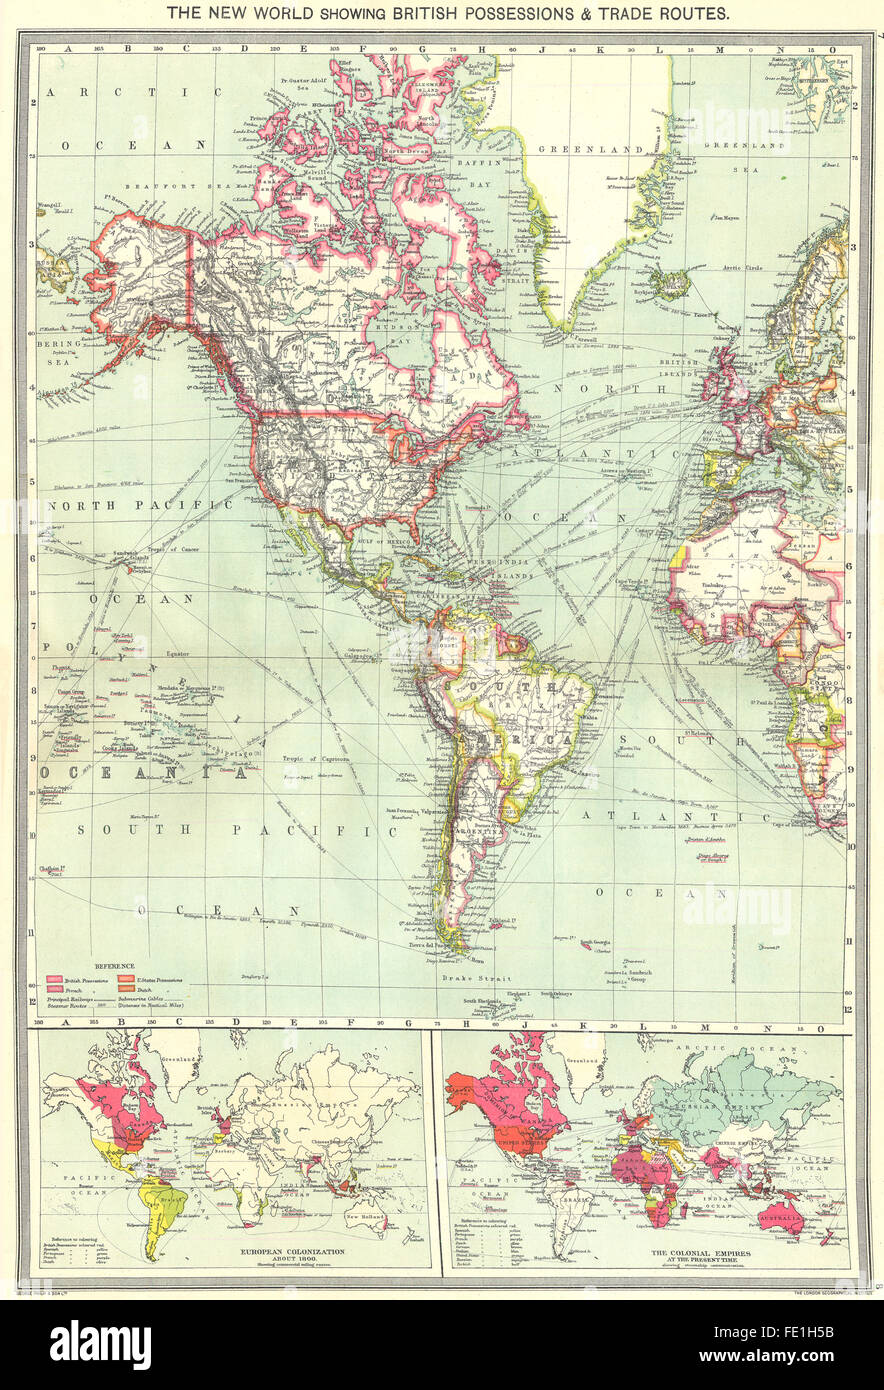 Nord-und Südamerika: Britische Kolonien Handelswege; Europäischen Besiedlung, 1907 alte Karte Stockfoto